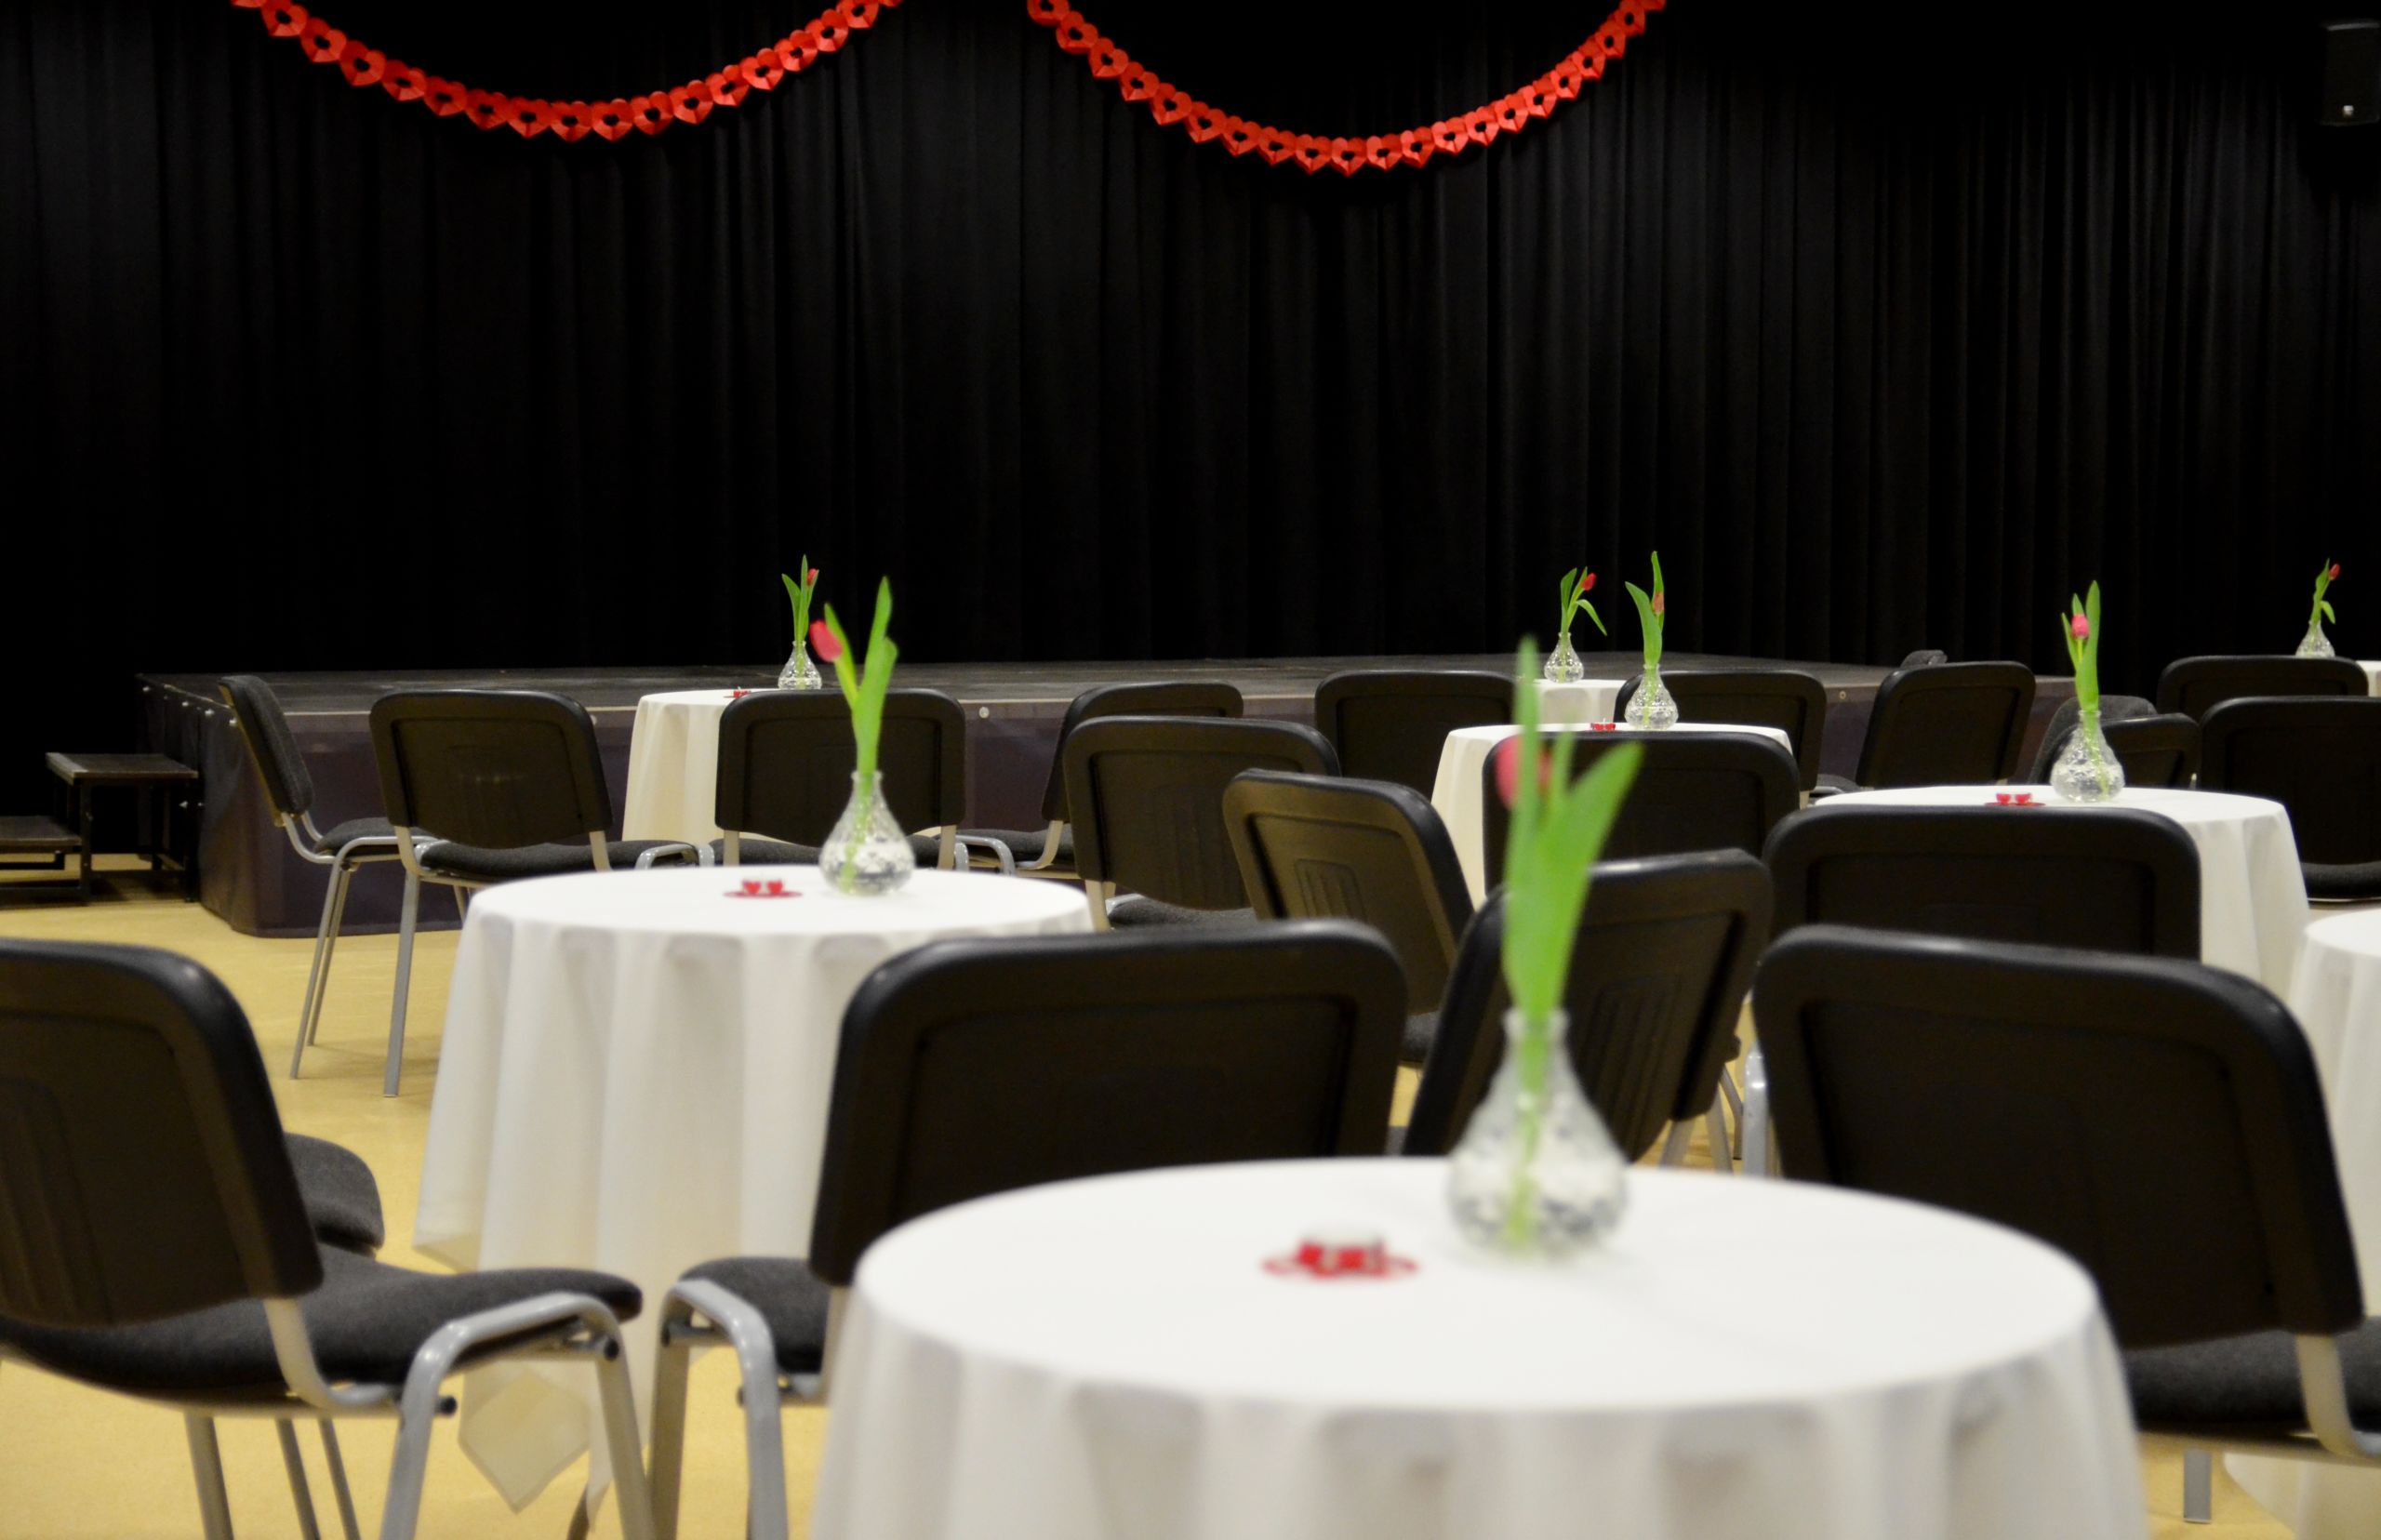 Zdjęcie przedstawiające salę kameralną. Wypełniona jest okrągłymi stołami i białymi obrusami oraz czarnymi krzesłami dookoła. Na każdym stole postawiony jest wazon z tulipanem. W tle znajduje się podest - scena z czarną kurtyną.